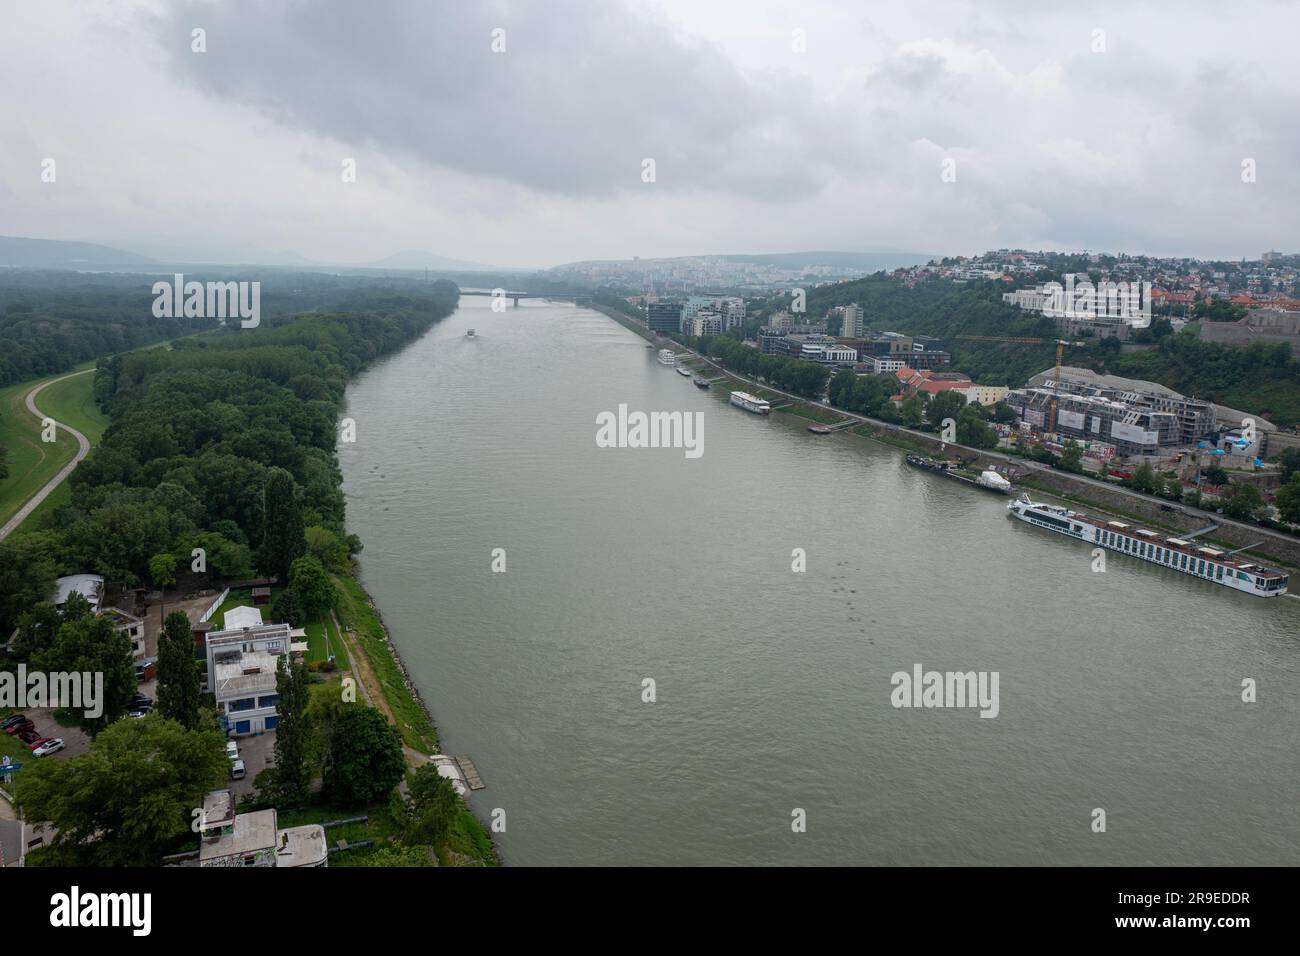 Pont OVNI Tower sur le Danube avec vue sur Bratislava, Slovaquie Banque D'Images